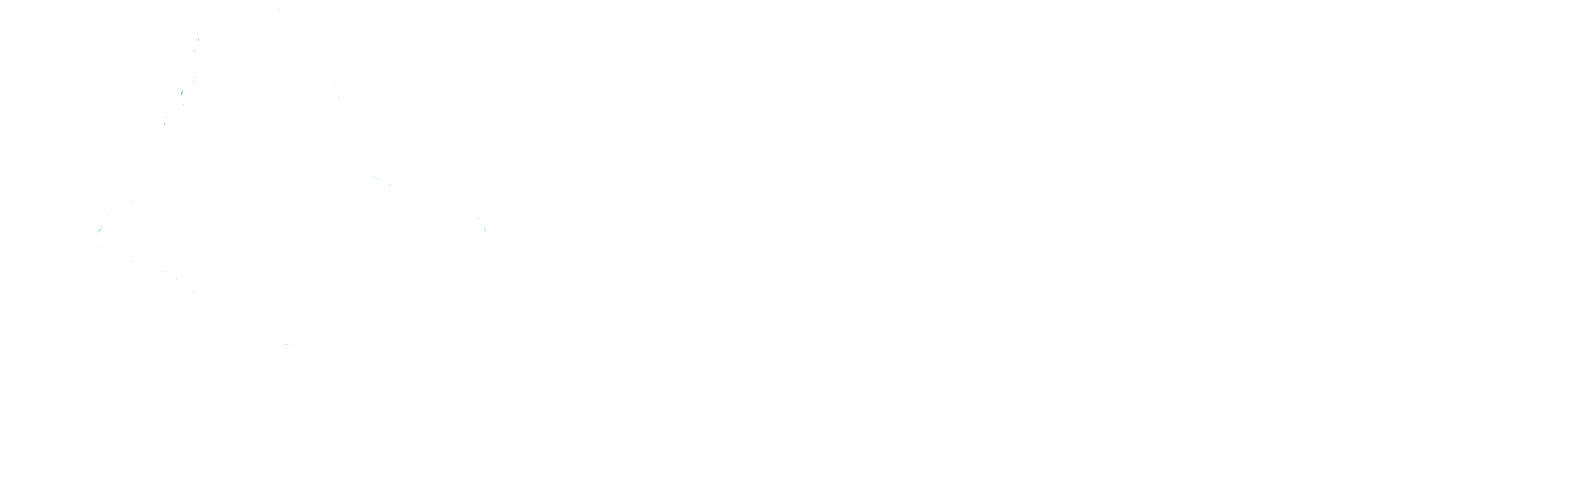 Greenup County Economic Development Authority